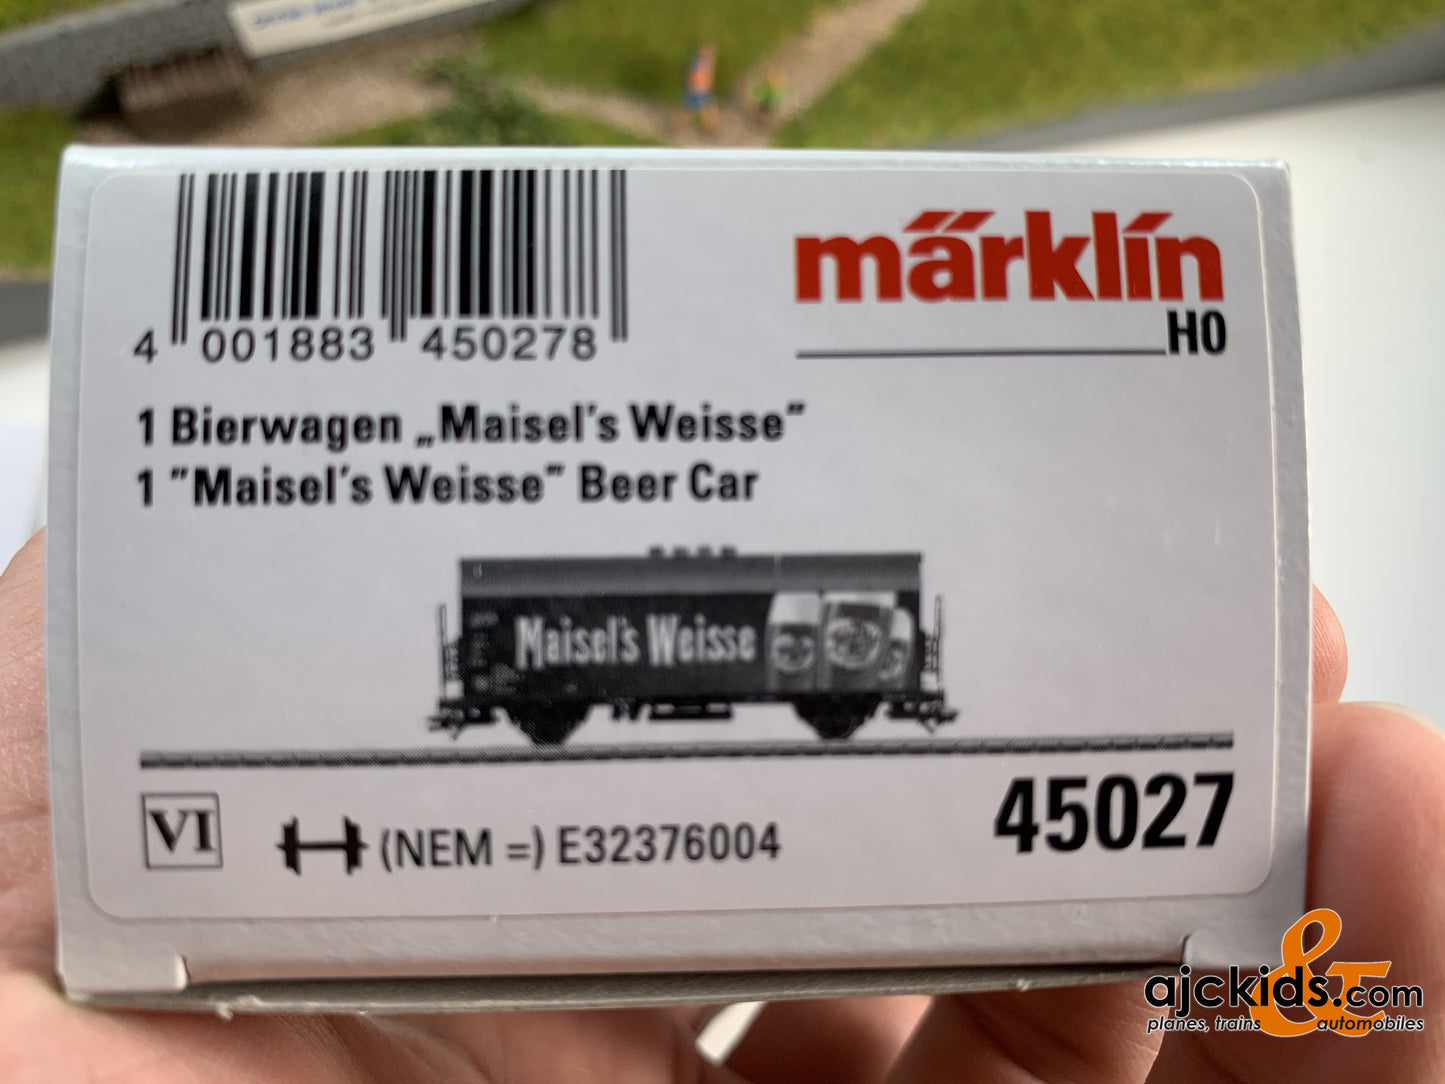 Marklin 45027 - Maisel’s Weisse Beer Car